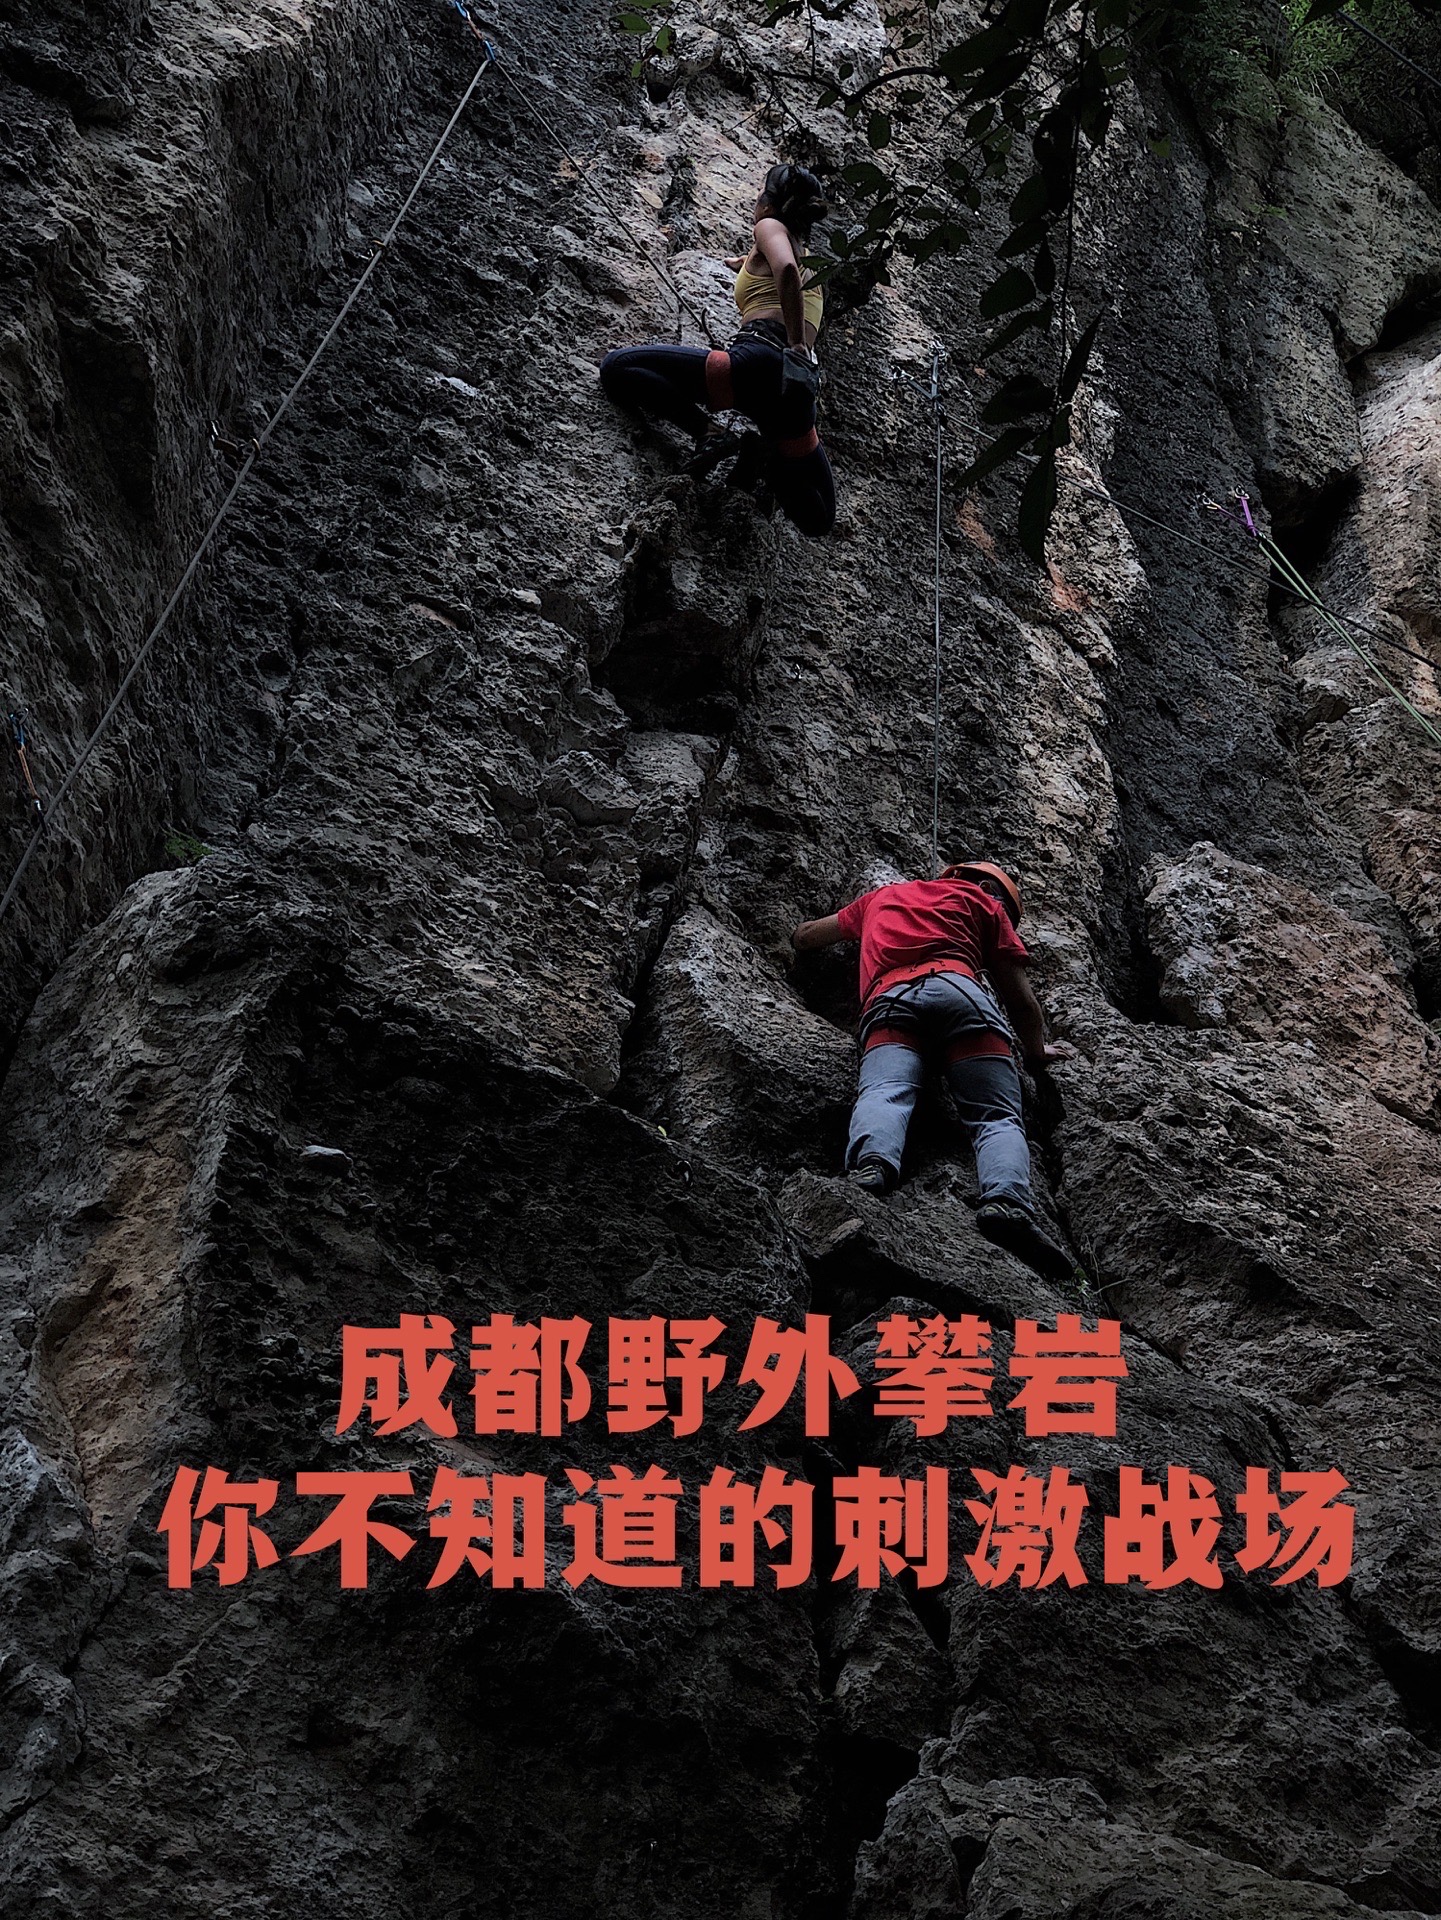 对攀岩的印象，还停留在室内攀岩室，尝试过几次觉得非常有趣，胆子一大，报名了攀岩公社的野外攀岩项目。 